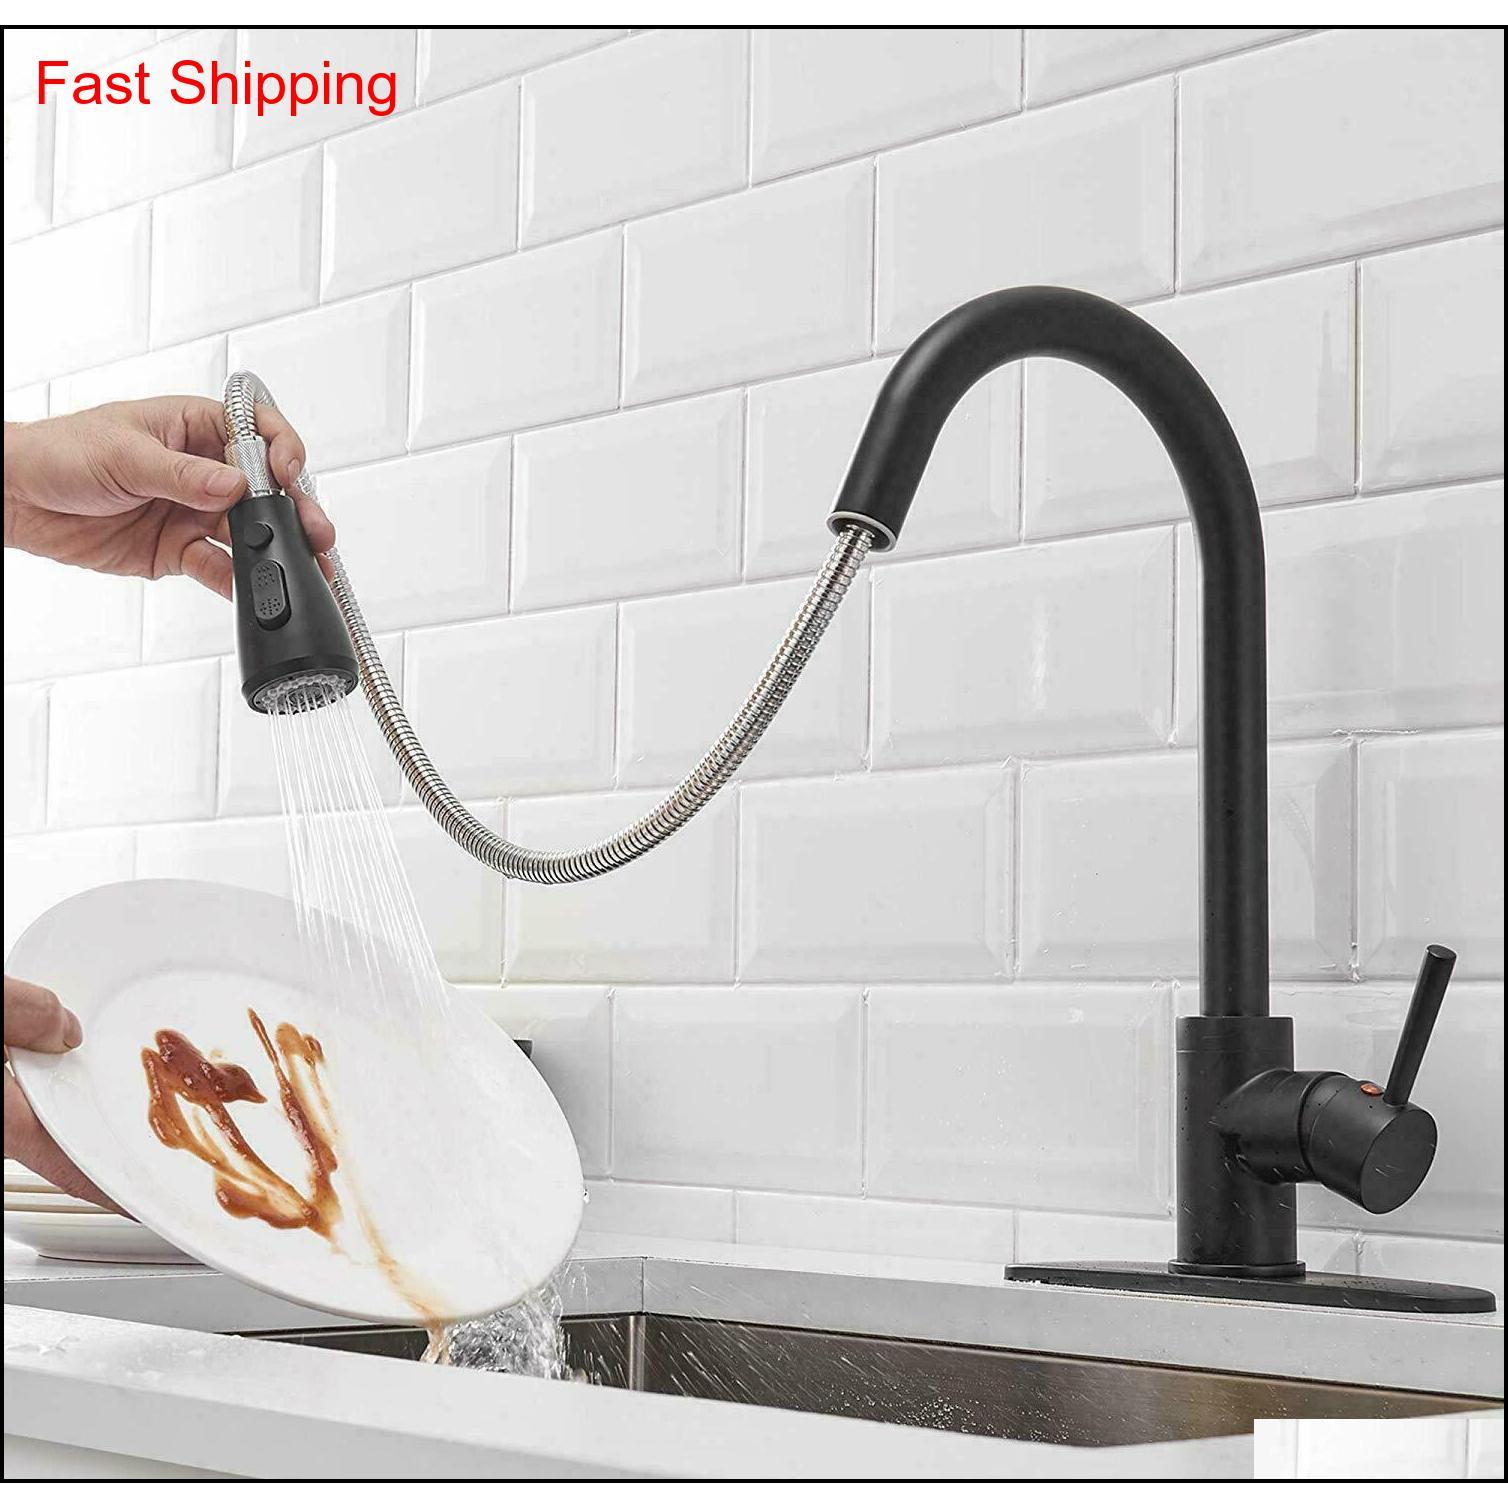 

Kitchen Sink Faucet Pull Out Sprayer Swivel Spout Matt Black Mixer Tap Flexible qylake bde_luck